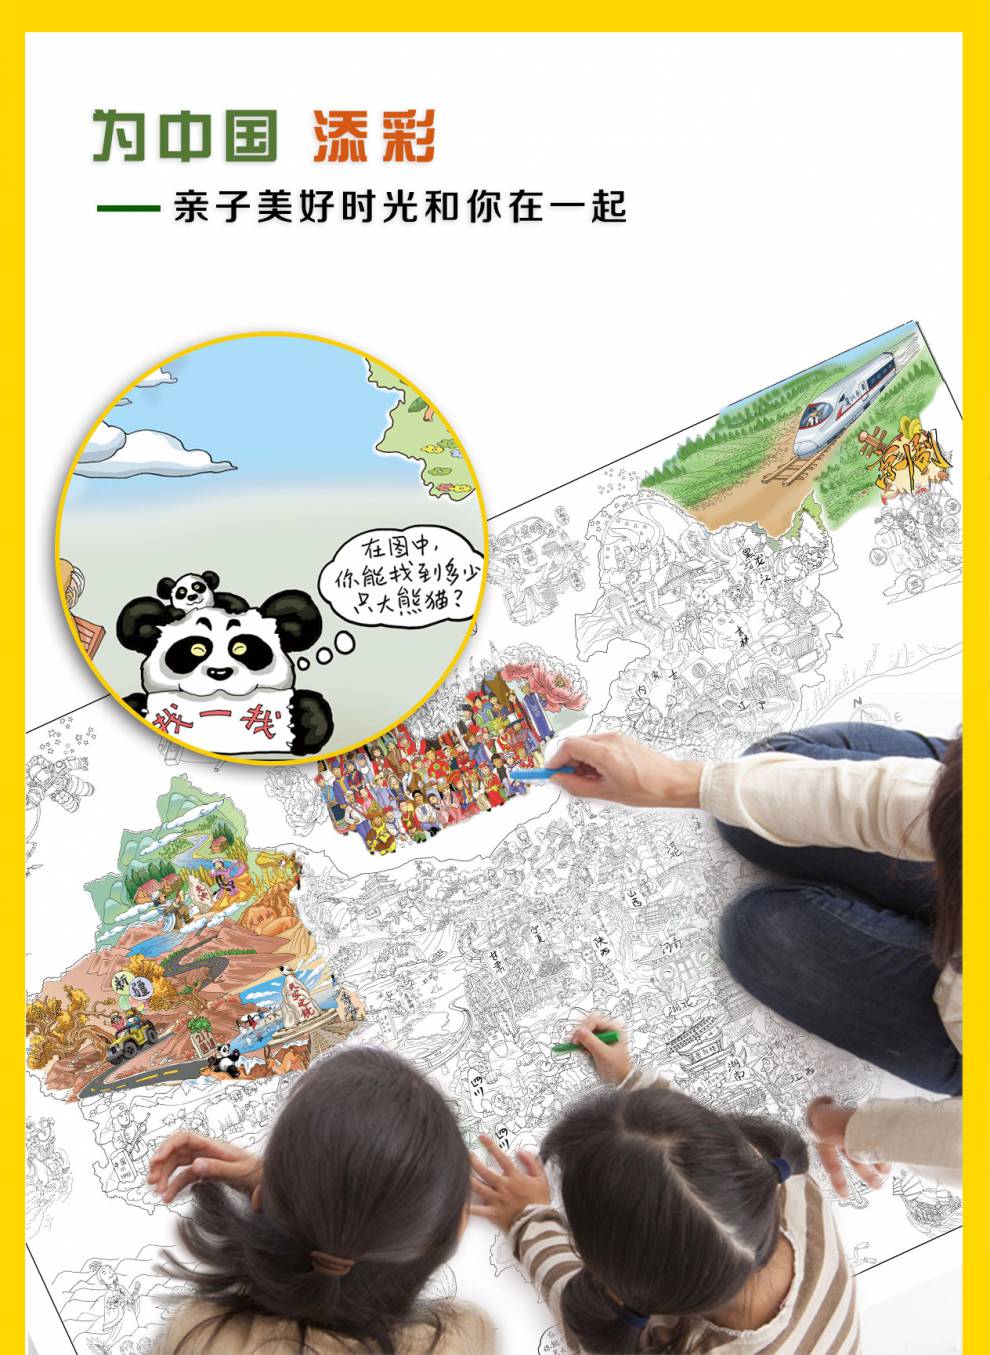 中国地图 儿童空白涂色diy地图 2020新版手绘涂鸦彩绘地图 地理启蒙